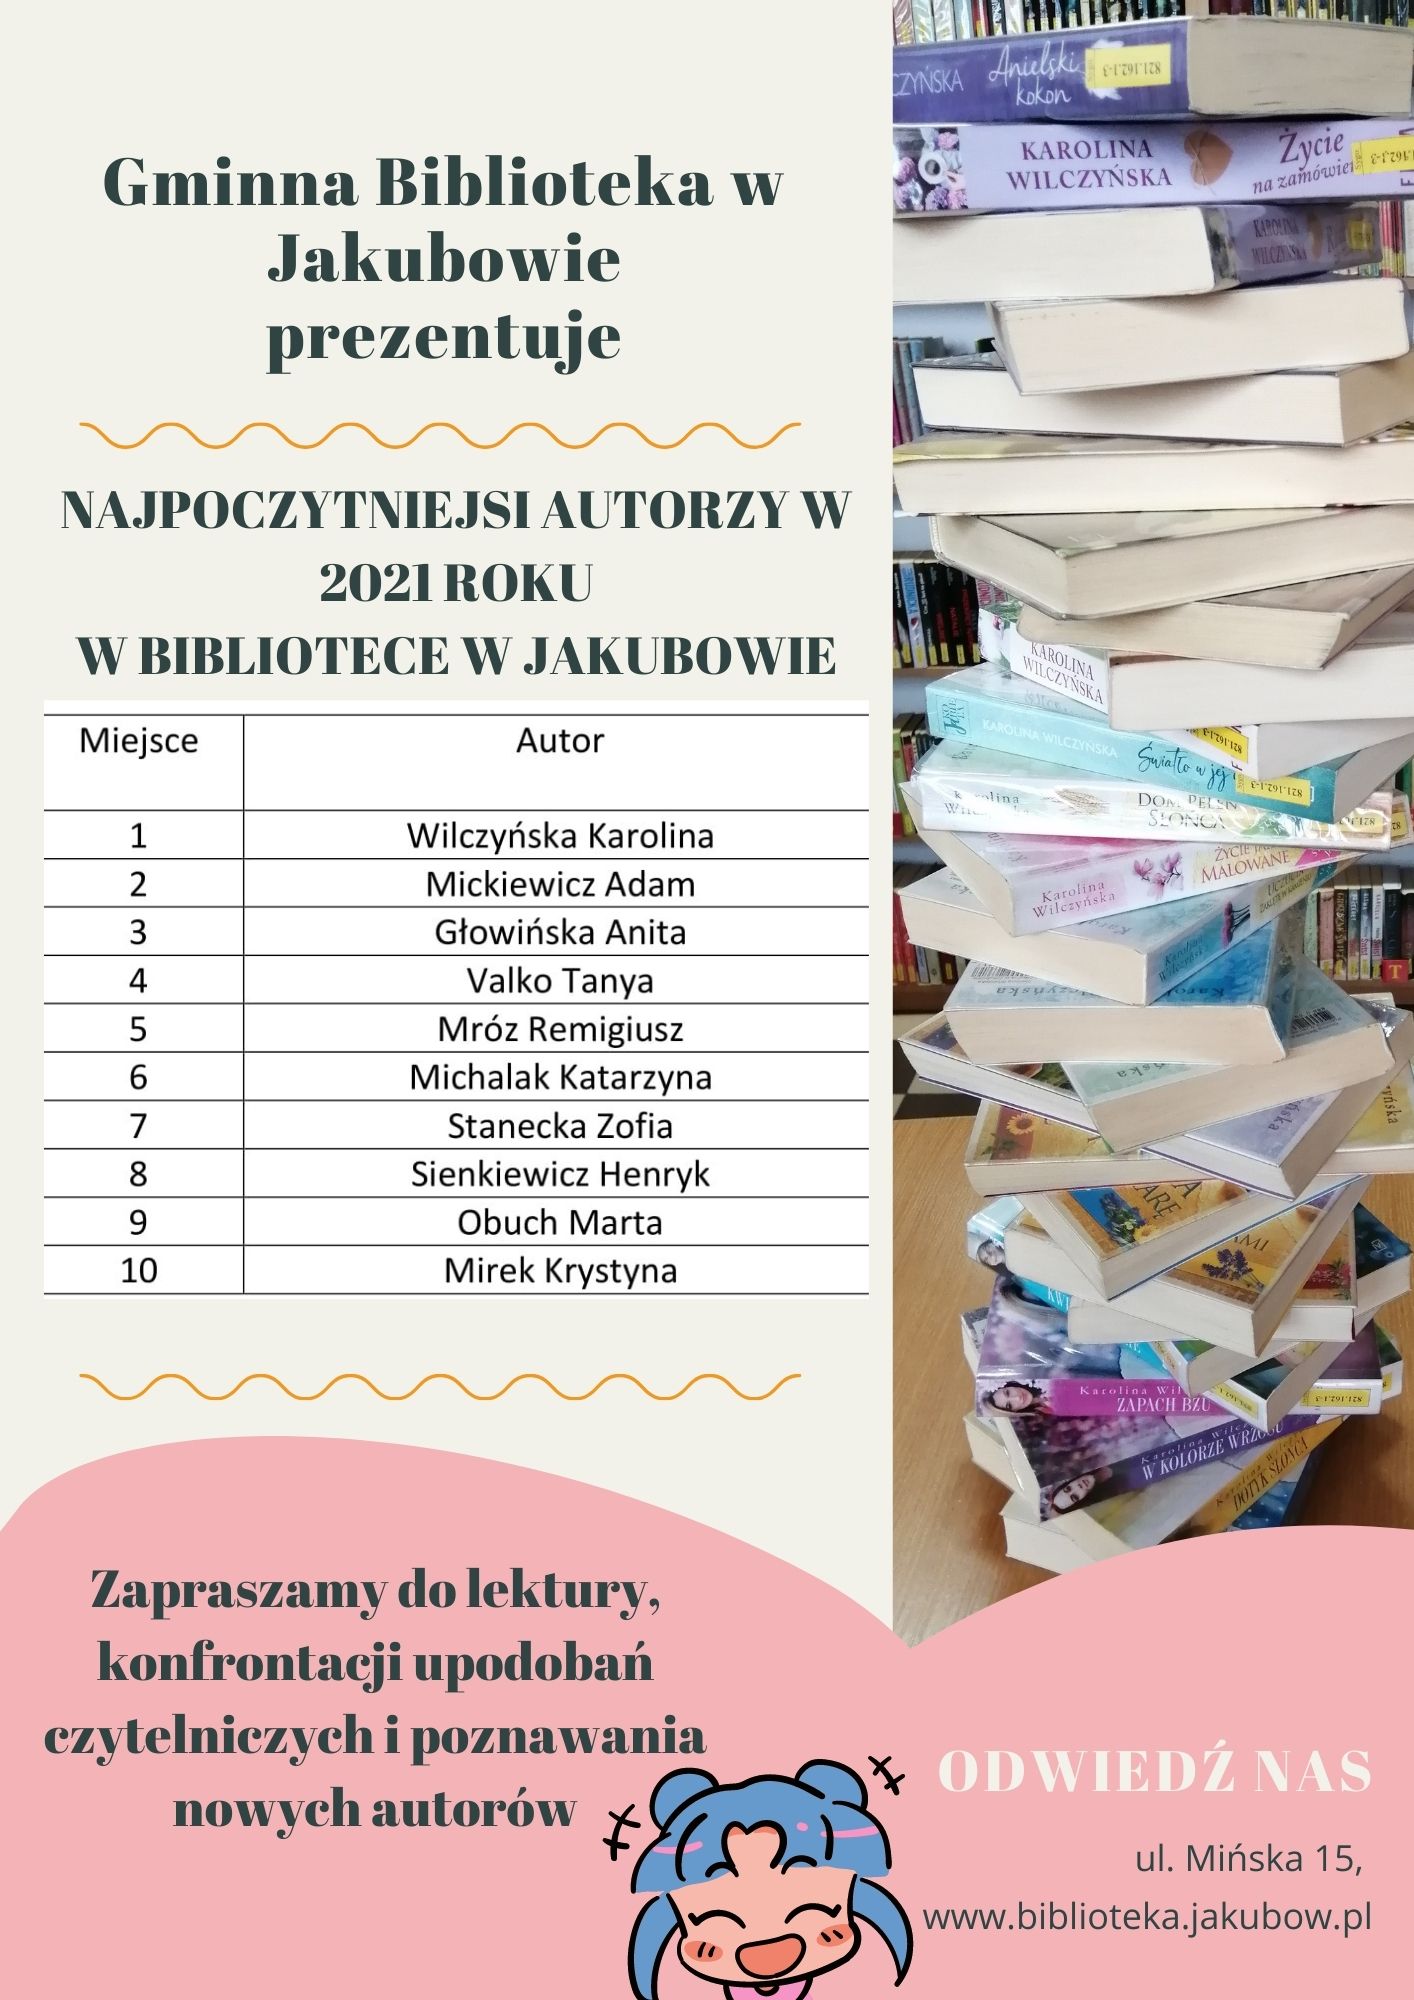 Na zdjęciu: plakat- graficzne zestawienie najpoczytniejszych autorów w bibliotece w Jakubowie.